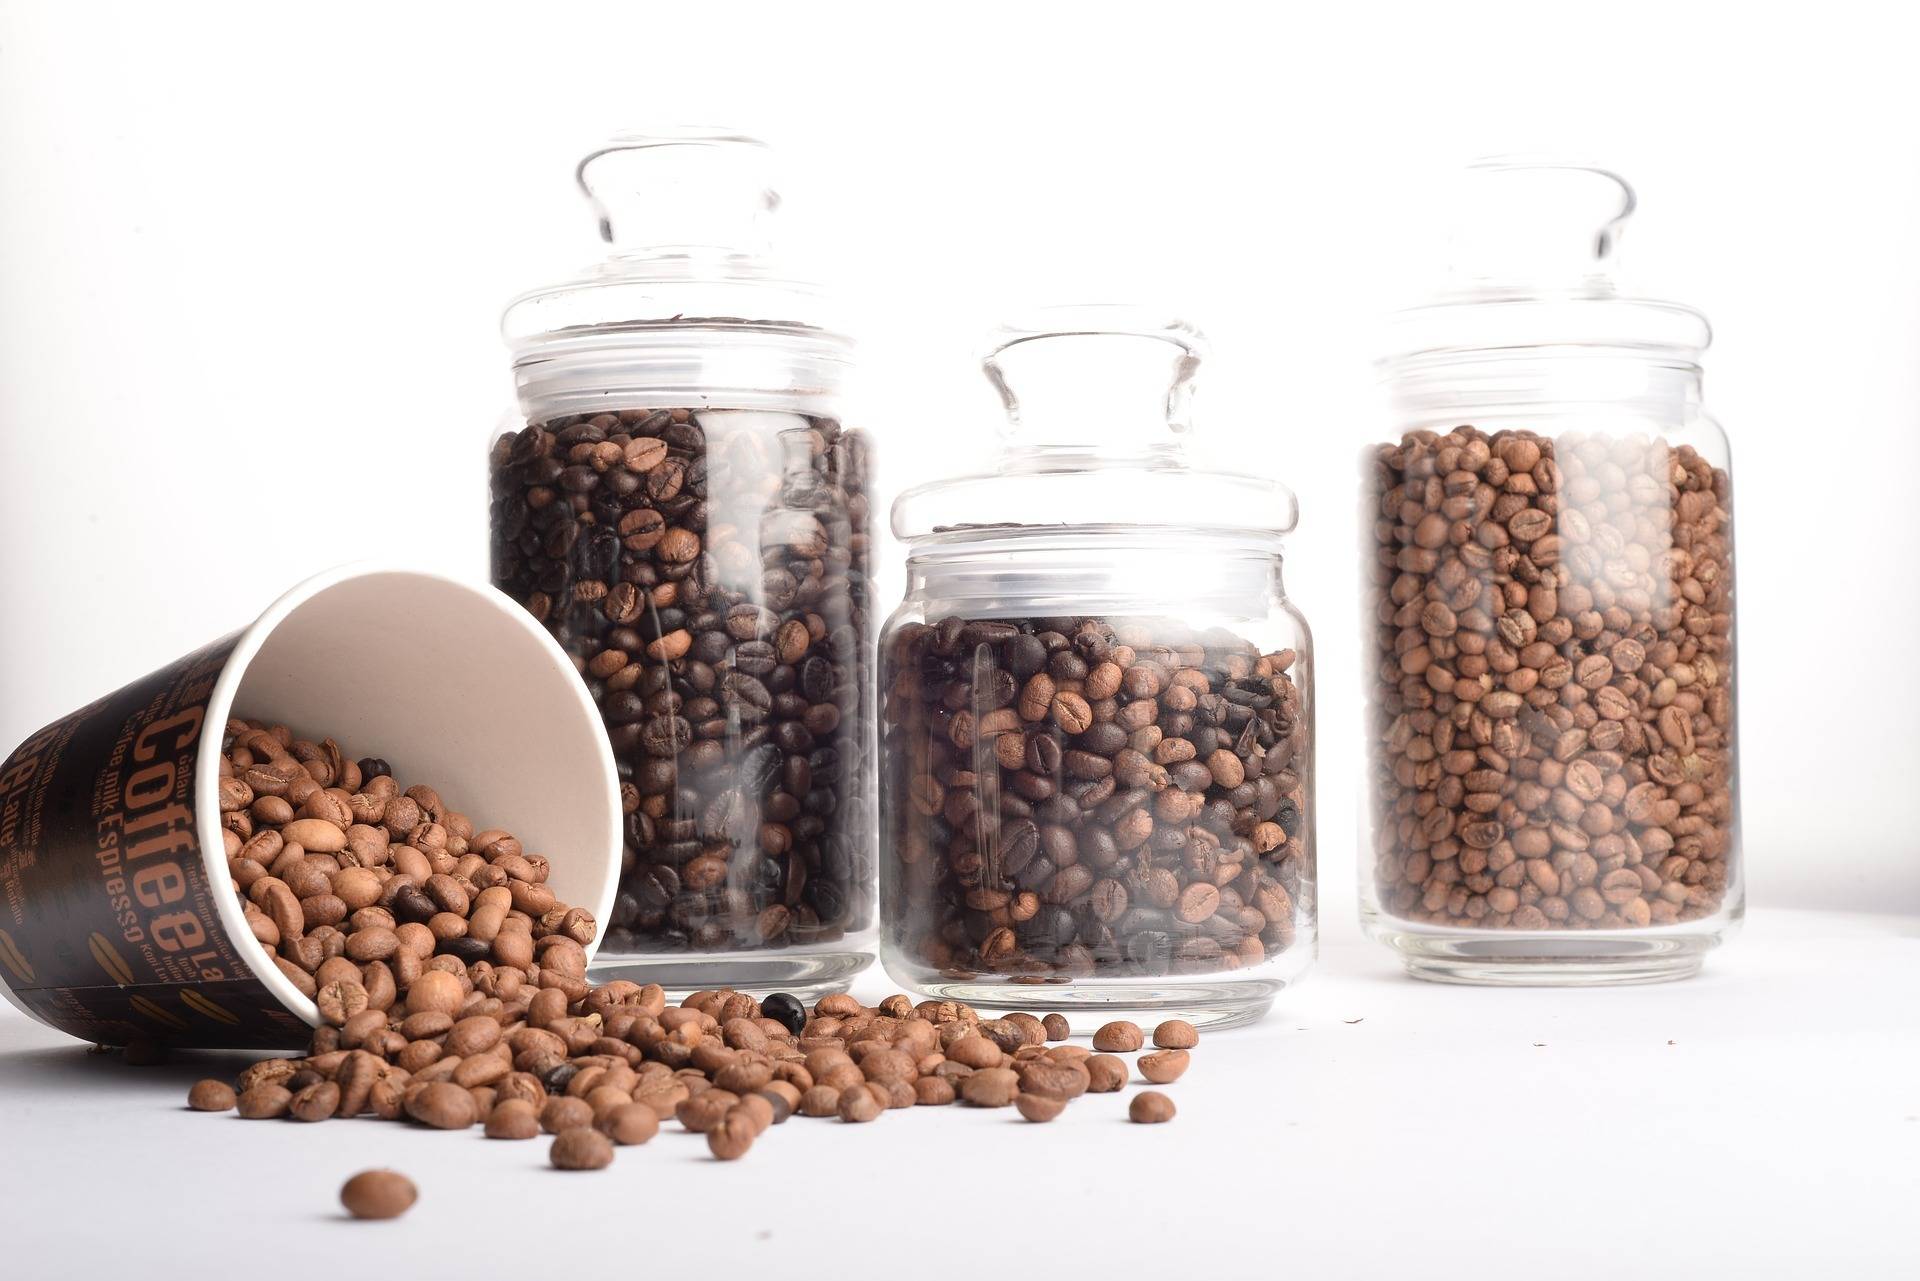 Хранение кофе в домашних условиях, как хранить кофе в зернах и молотый правильно, срок и условия для молотого, растворимого и в зернах после вскрытия упаковки